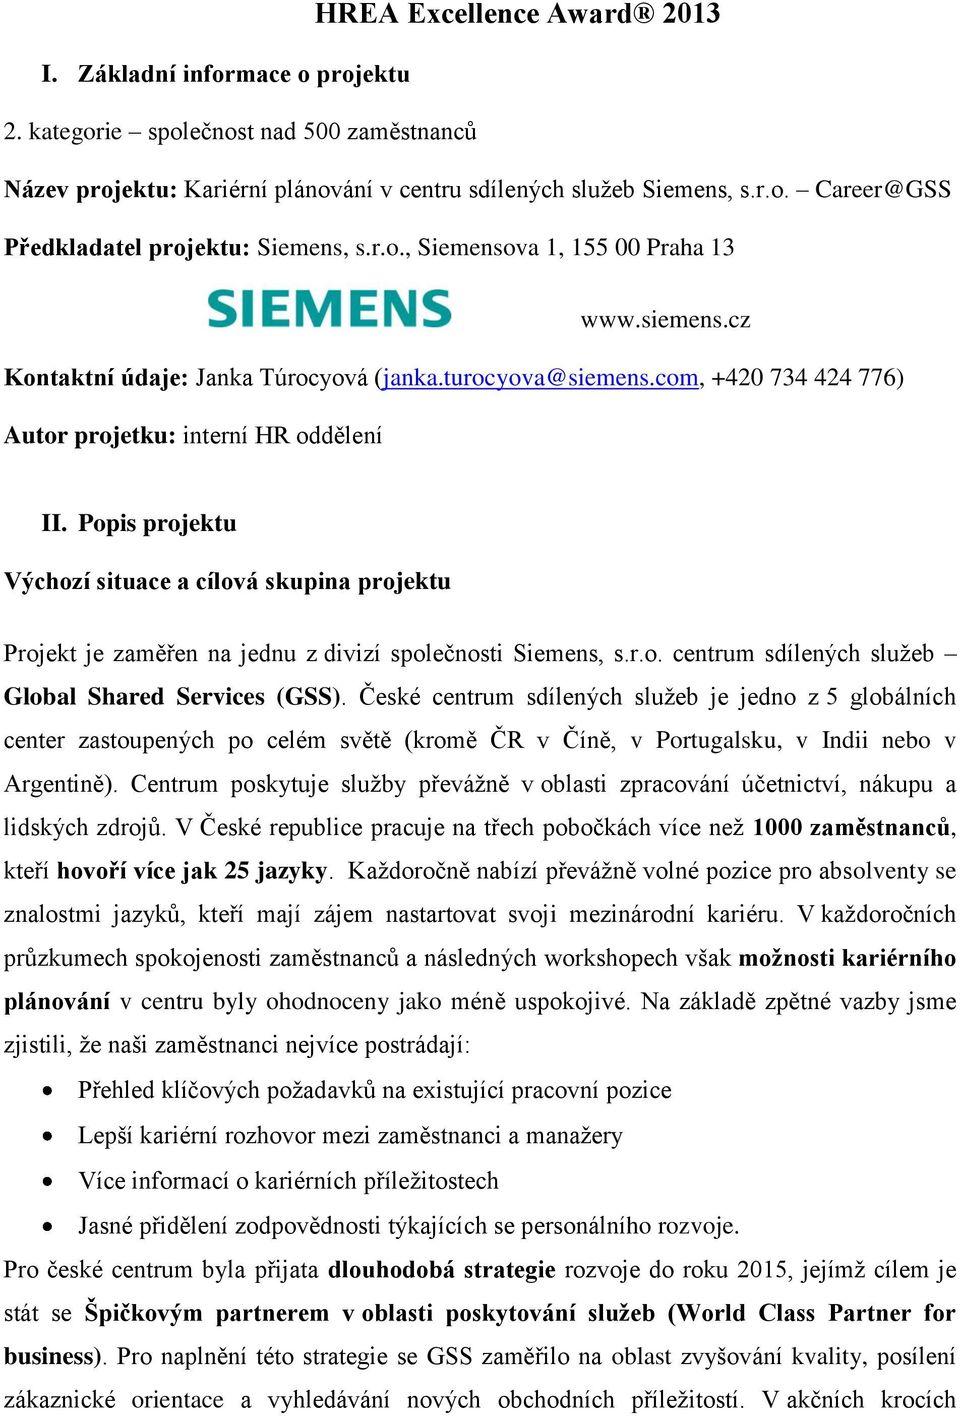 Popis projektu Výchozí situace a cílová skupina projektu Projekt je zaměřen na jednu z divizí společnosti Siemens, s.r.o. centrum sdílených služeb Global Shared Services (GSS).